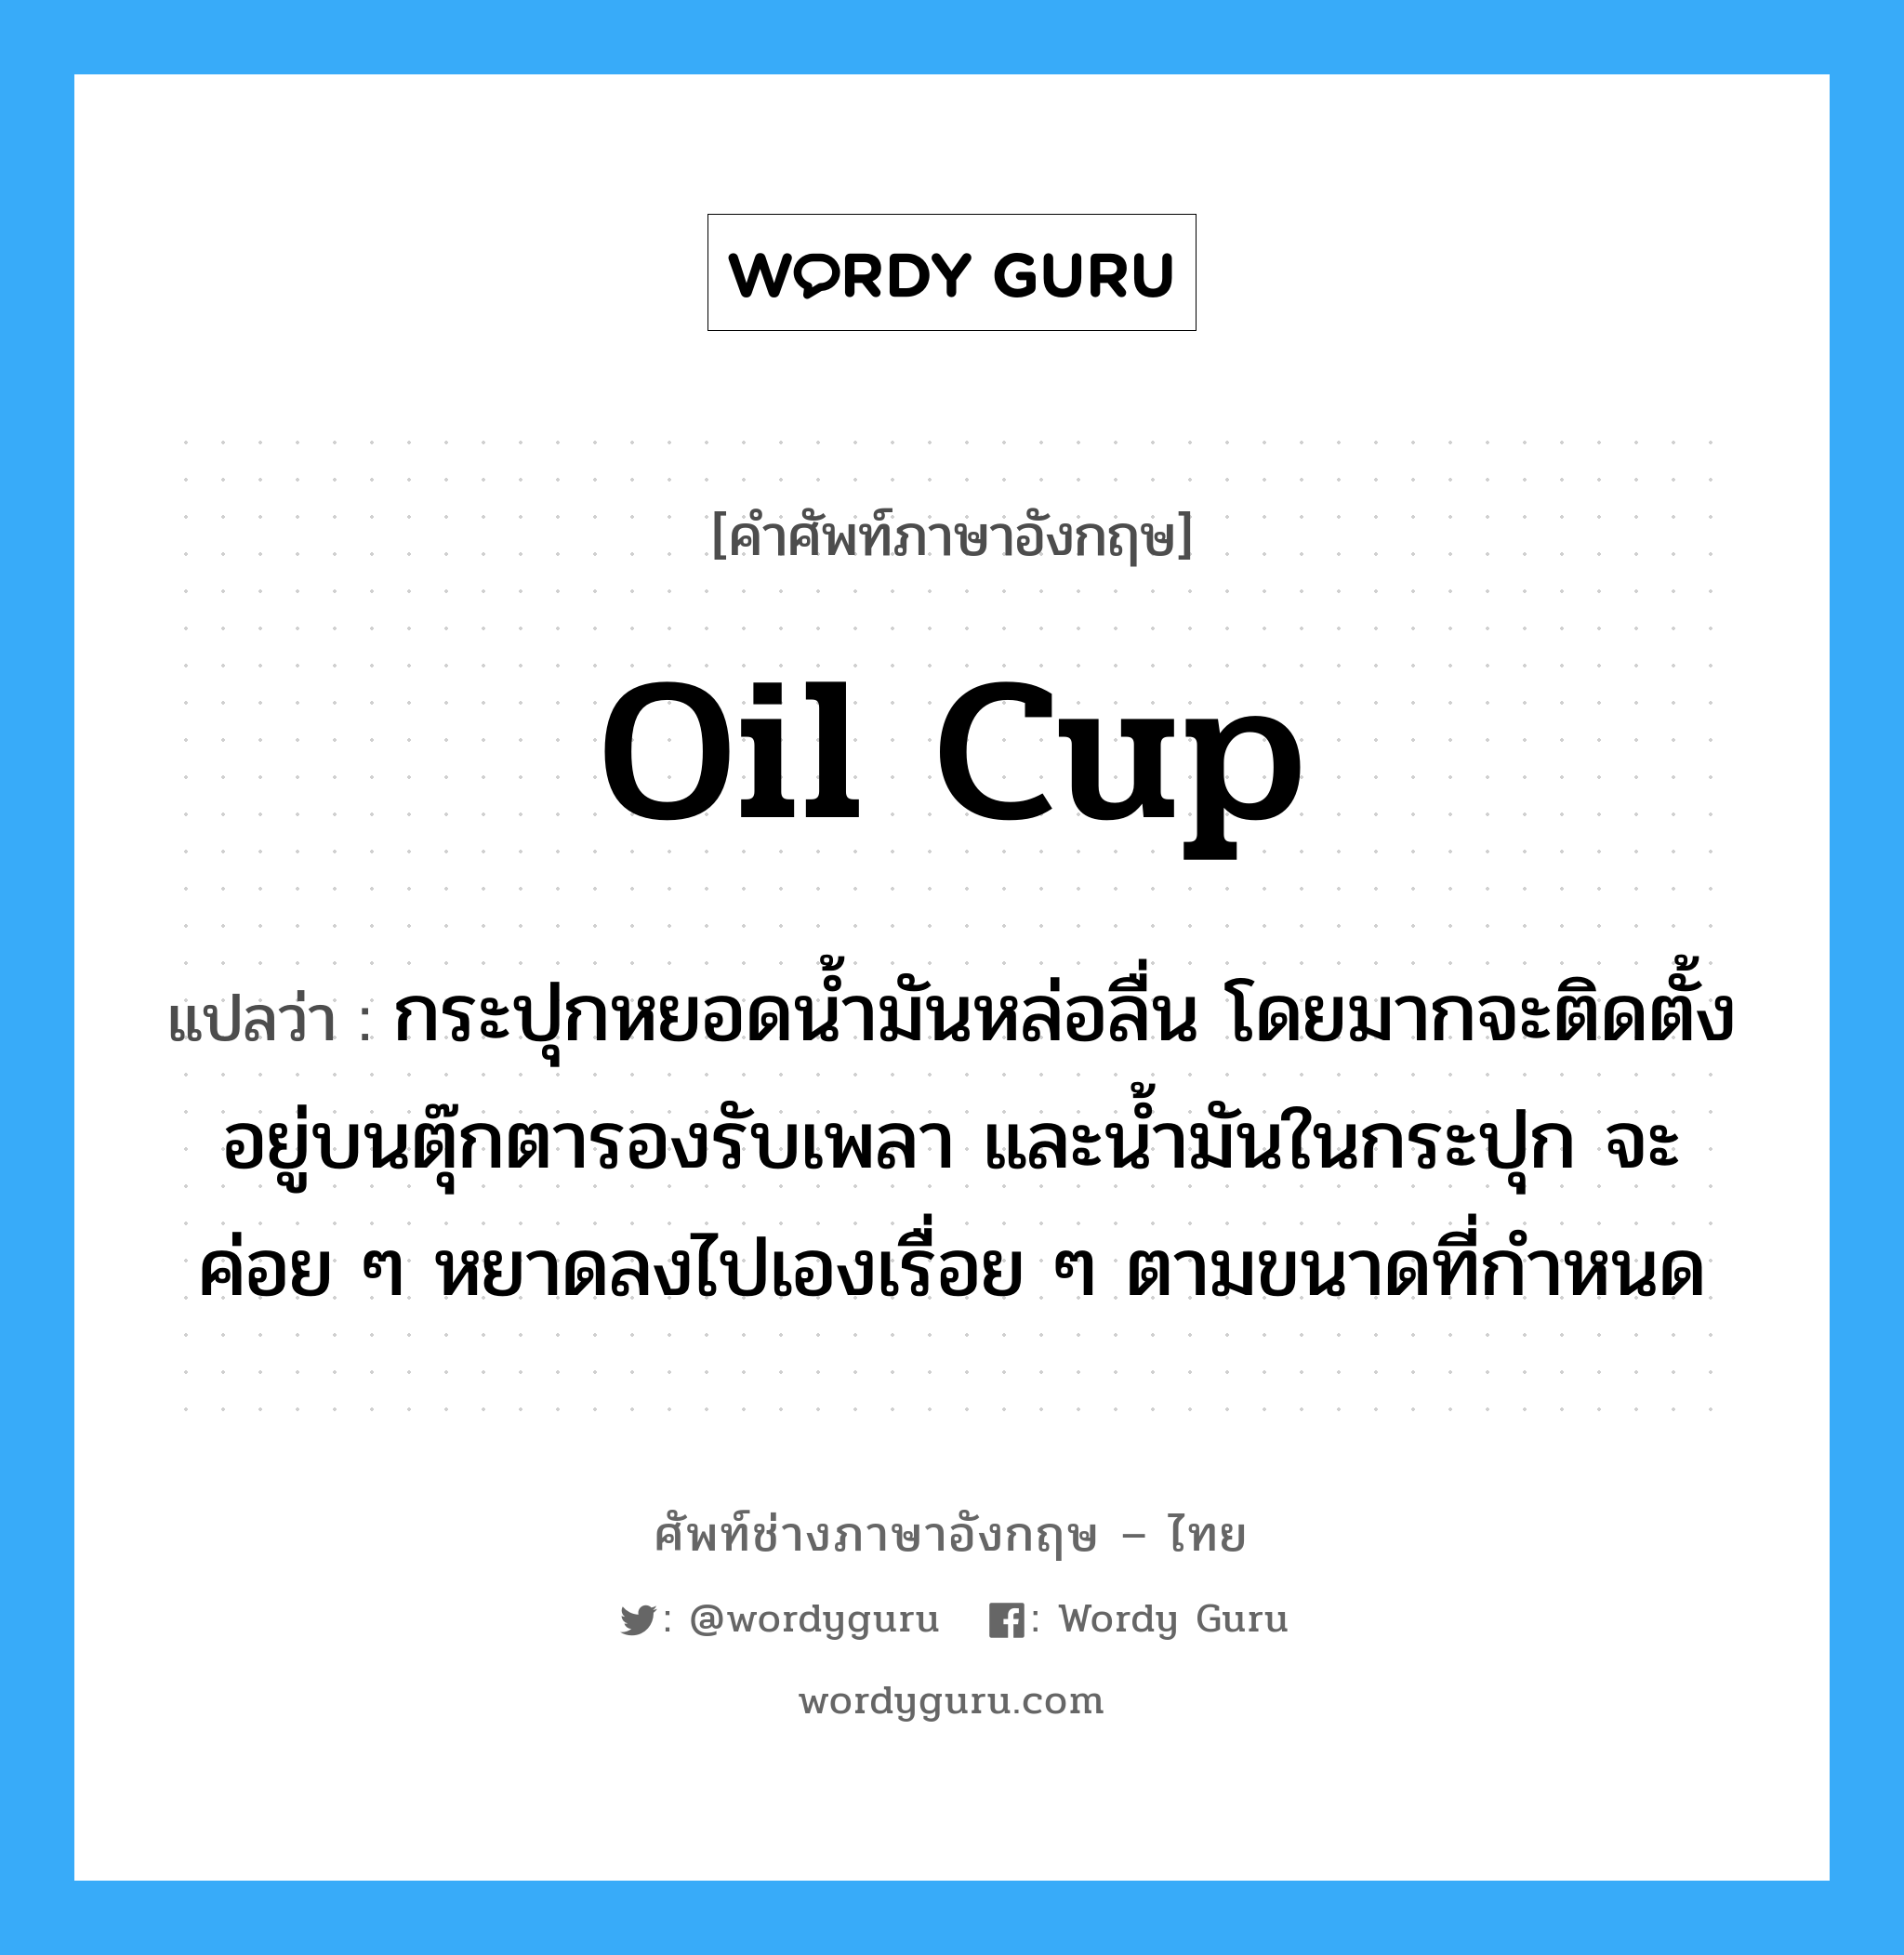 oil cup แปลว่า?, คำศัพท์ช่างภาษาอังกฤษ - ไทย oil cup คำศัพท์ภาษาอังกฤษ oil cup แปลว่า กระปุกหยอดน้ำมันหล่อลื่น โดยมากจะติดตั้งอยู่บนตุ๊กตารองรับเพลา และน้ำมันในกระปุก จะค่อย ๆ หยาดลงไปเองเรื่อย ๆ ตามขนาดที่กำหนด